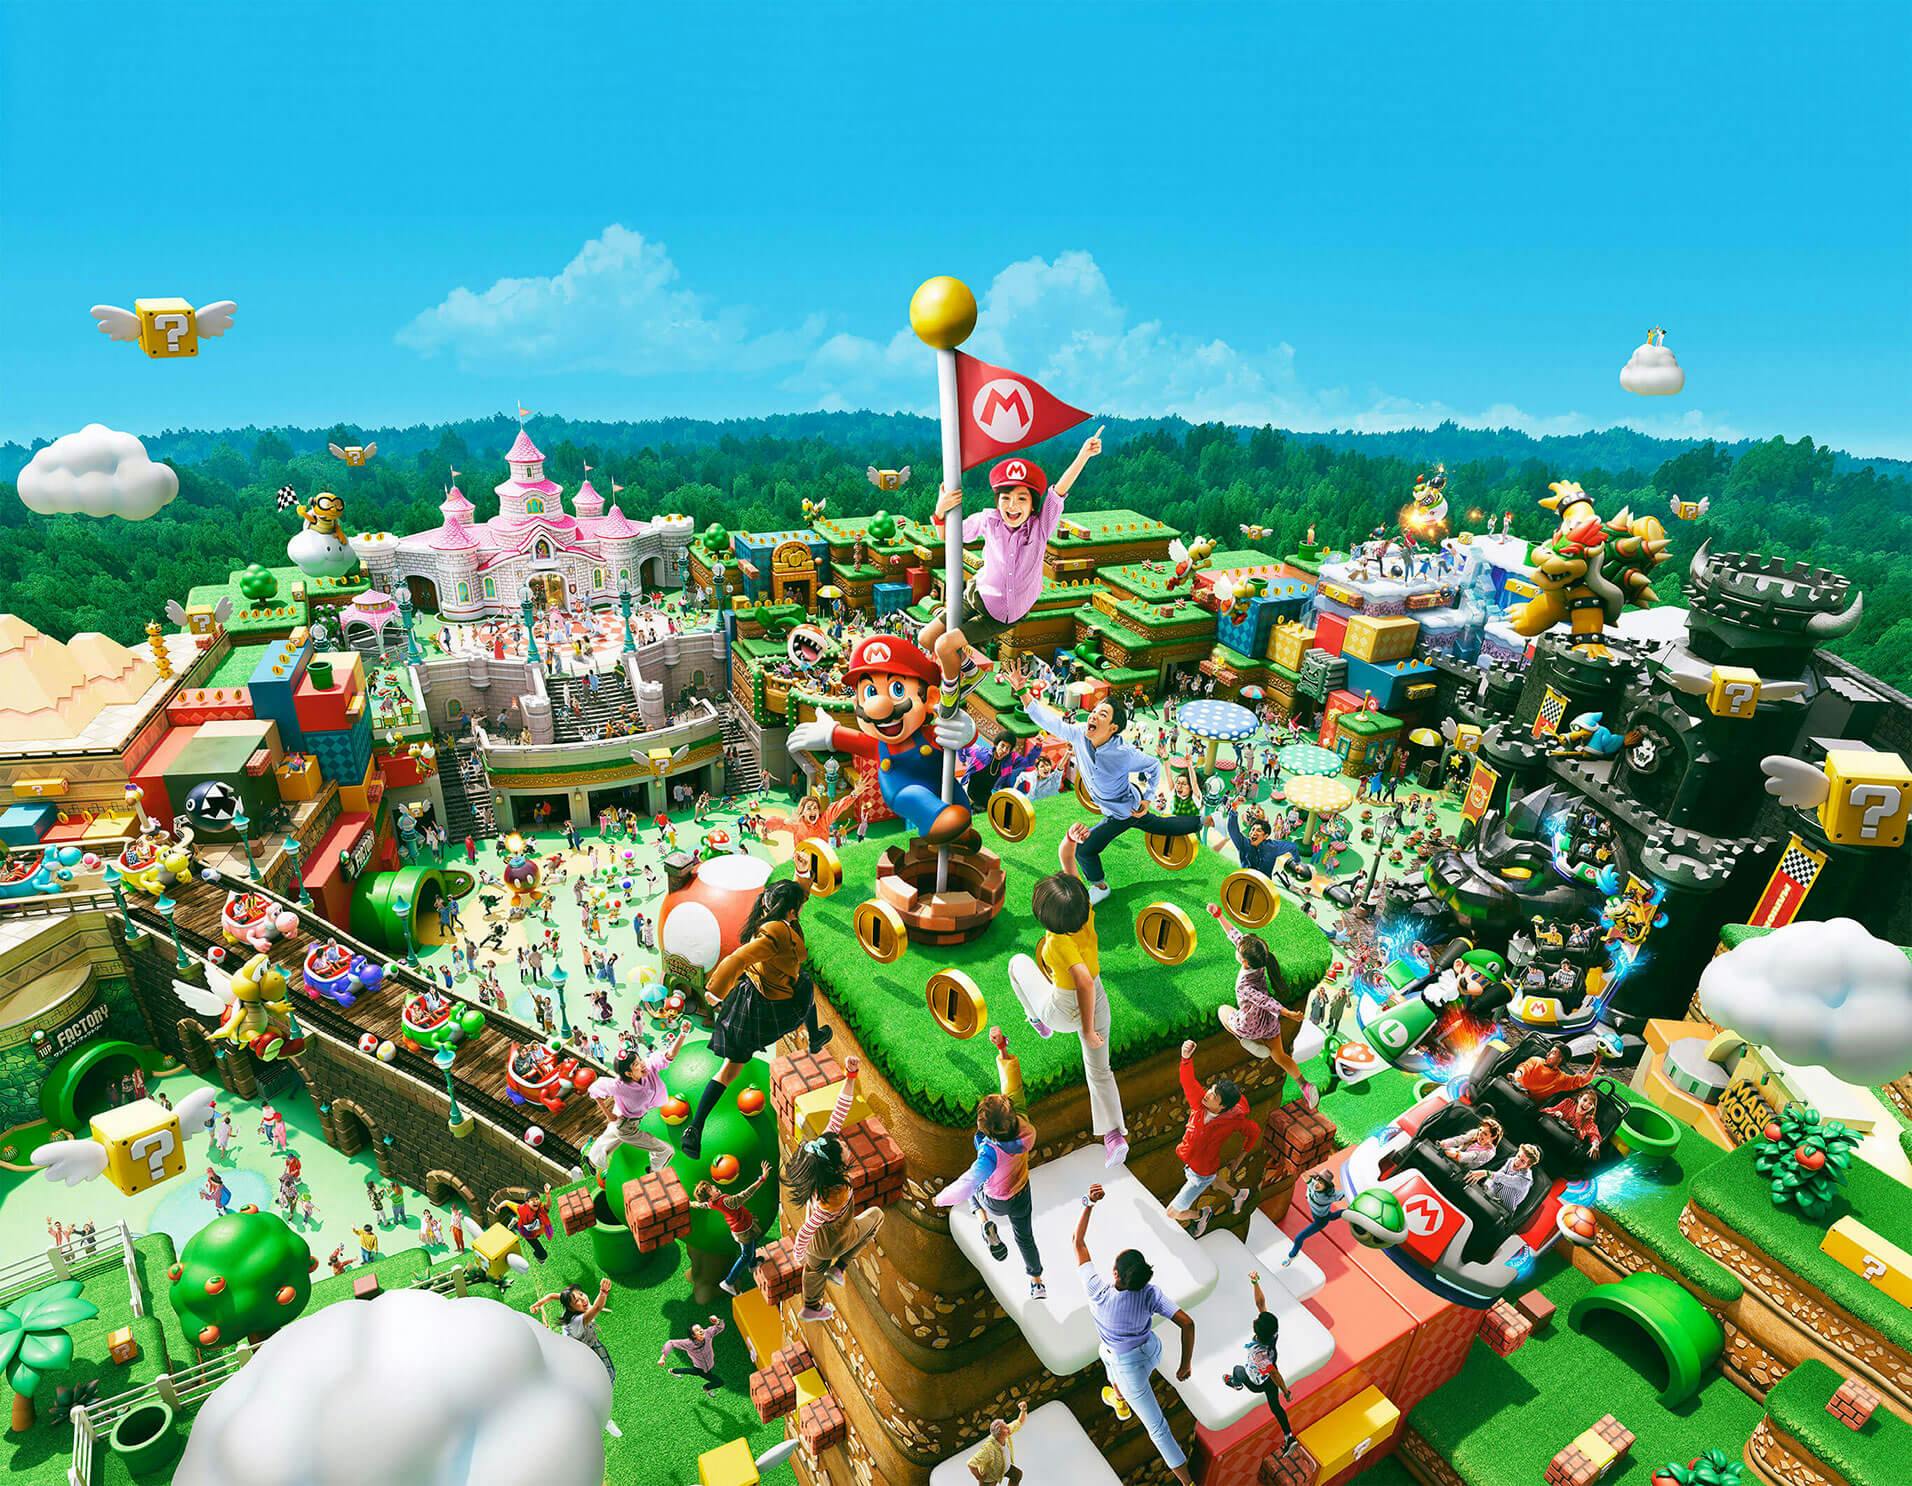 Nintendo inaugura área inspirada no jogo 'Super Mario' no Japão -  18/03/2021 - Diversão - F5